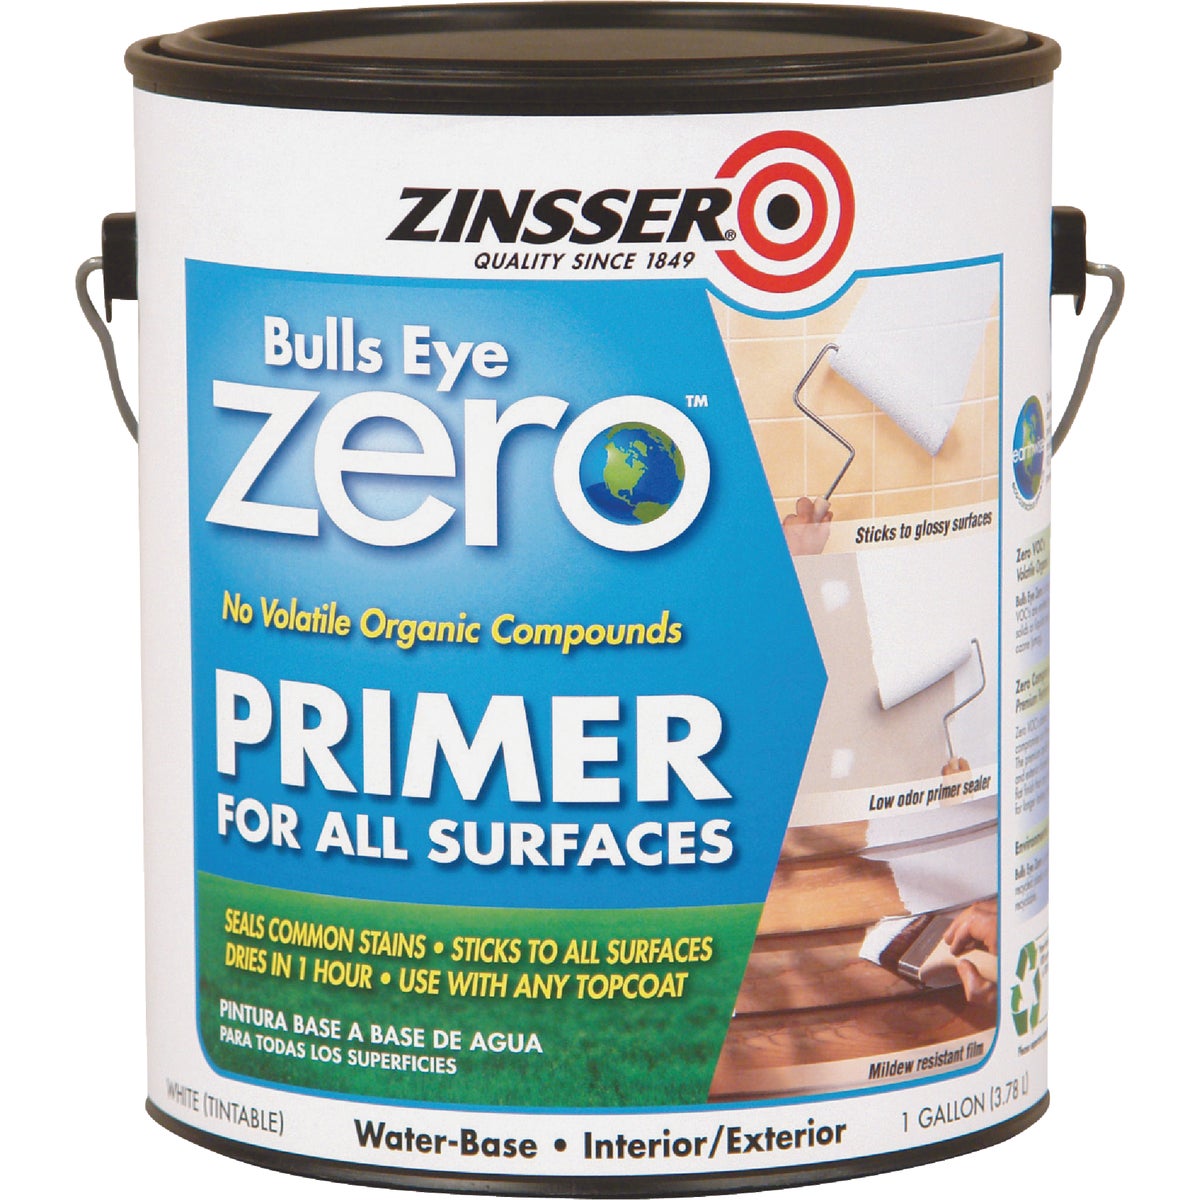 Zinsser Bulls Eye Zero VOC Interior/Exterior Primer, White, 1 Gal.